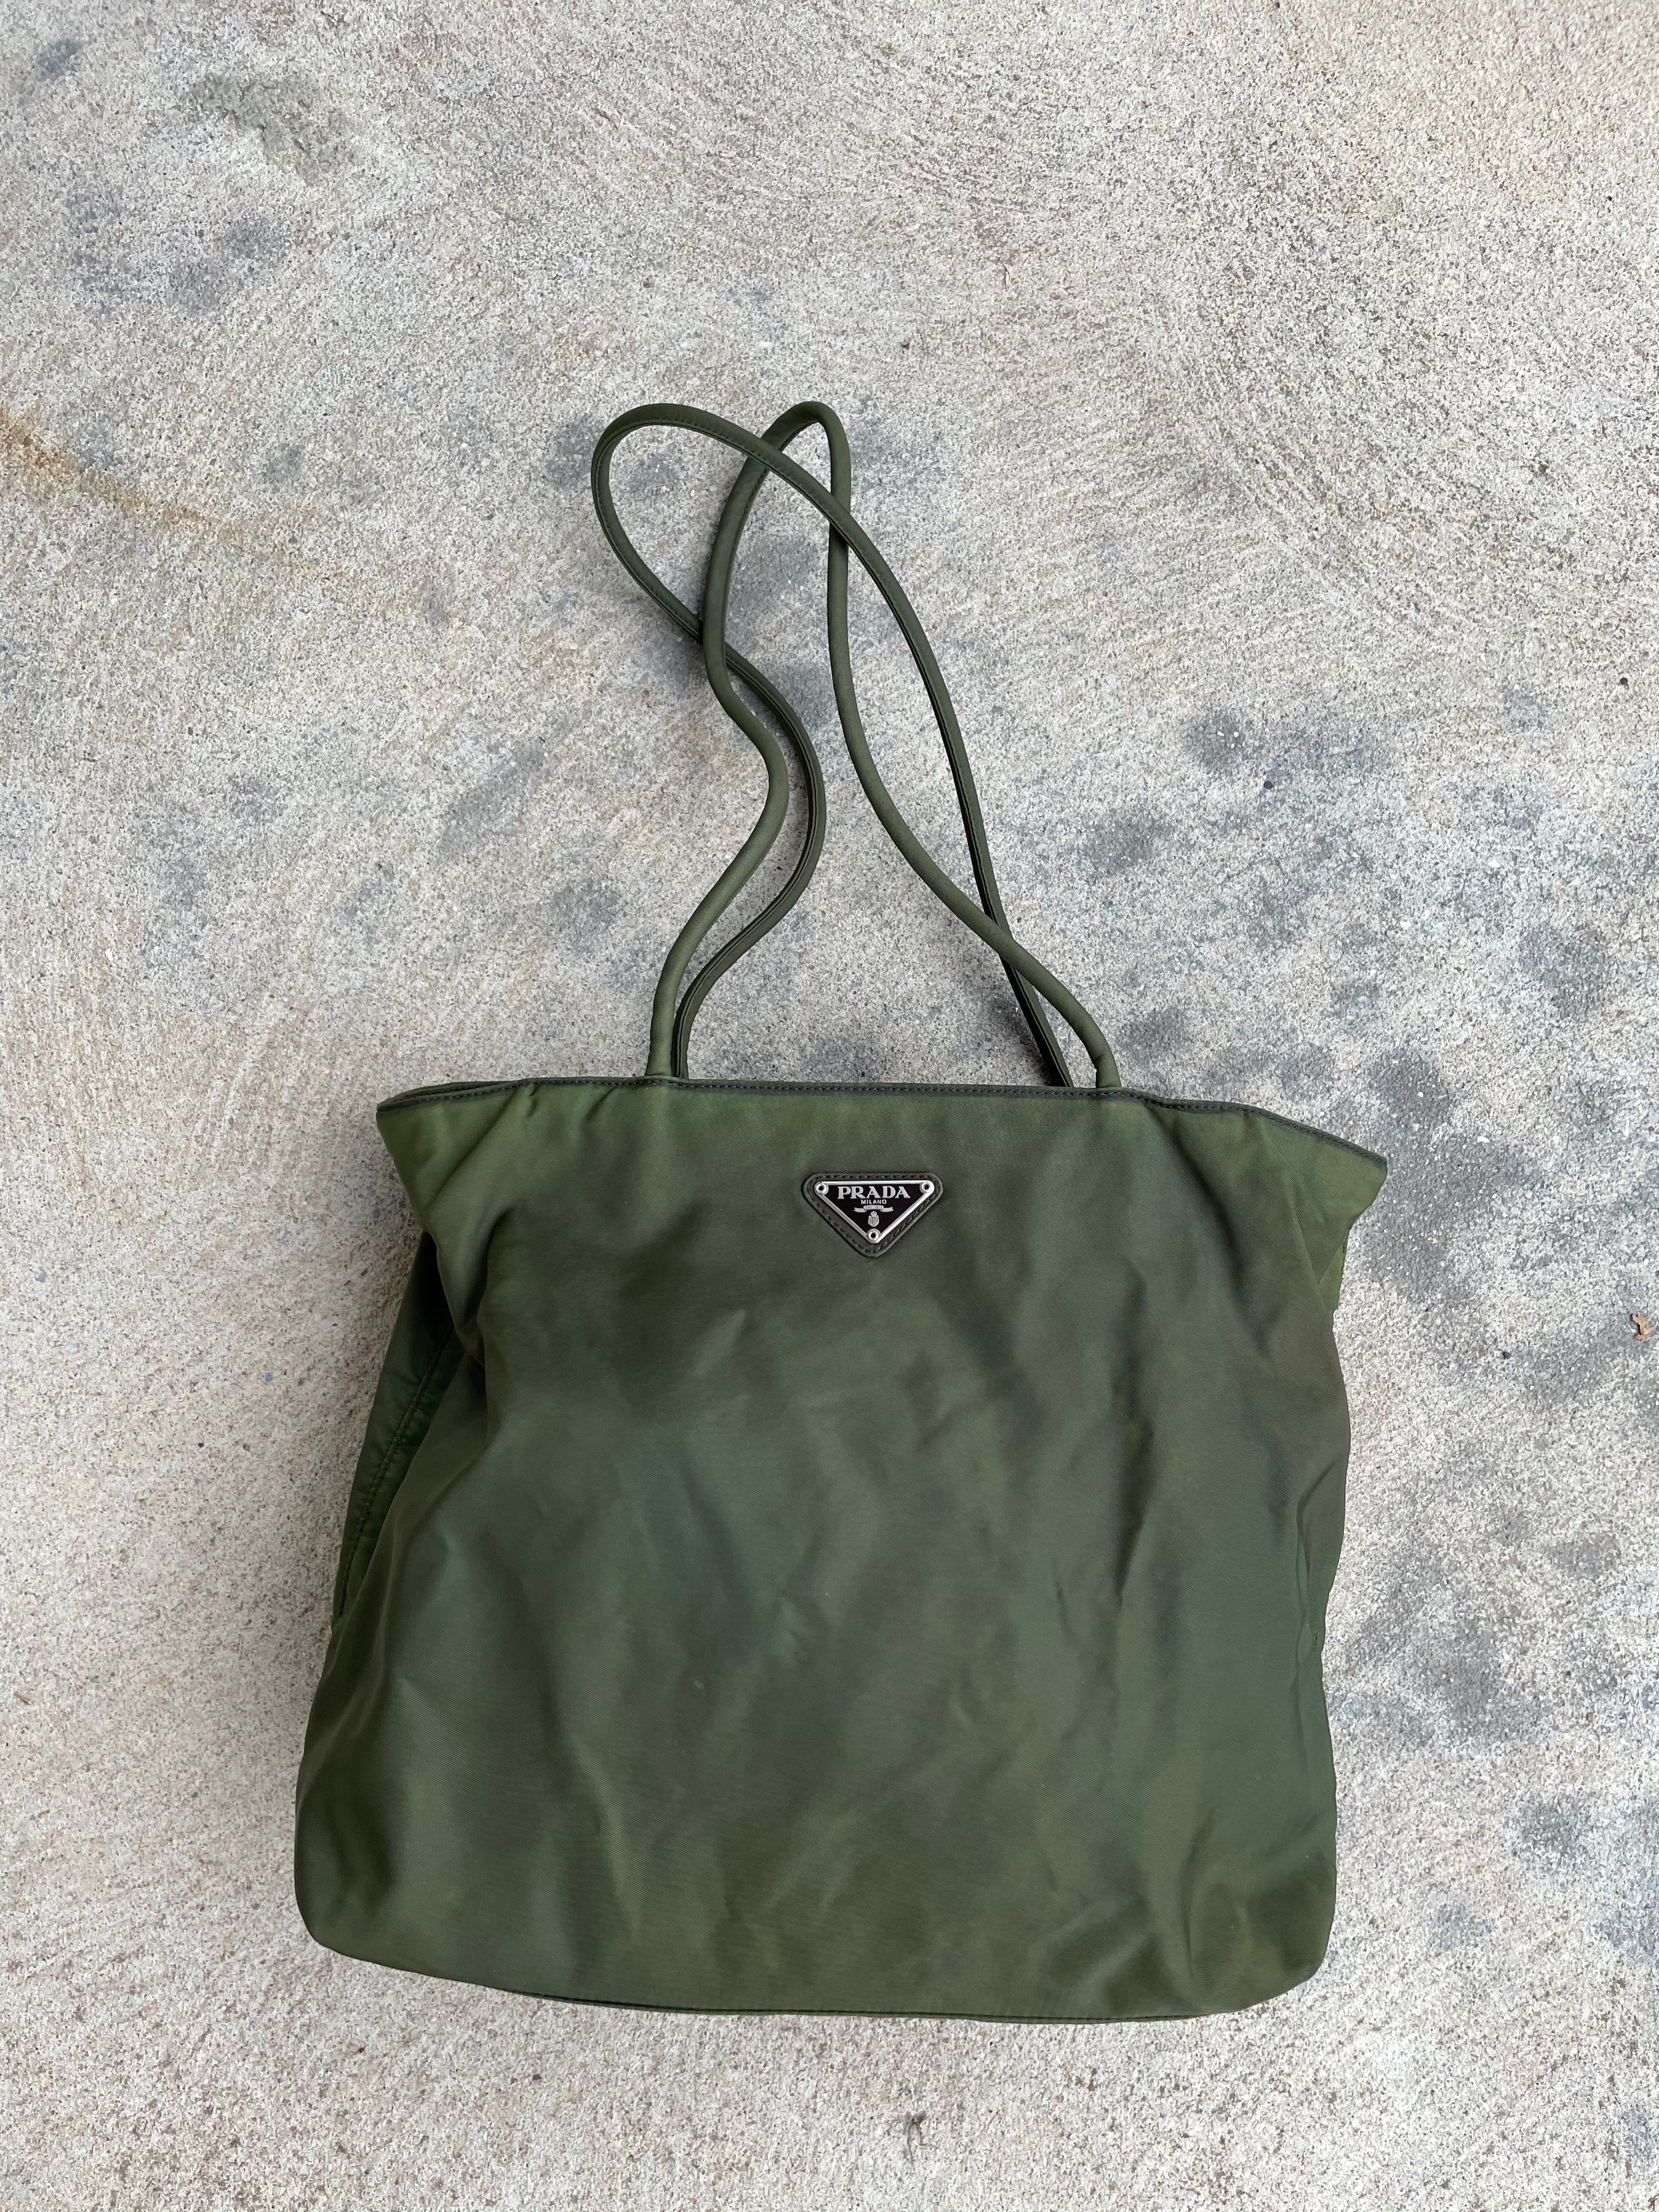 Prada Nylon Mini Tote Bag Forest Green